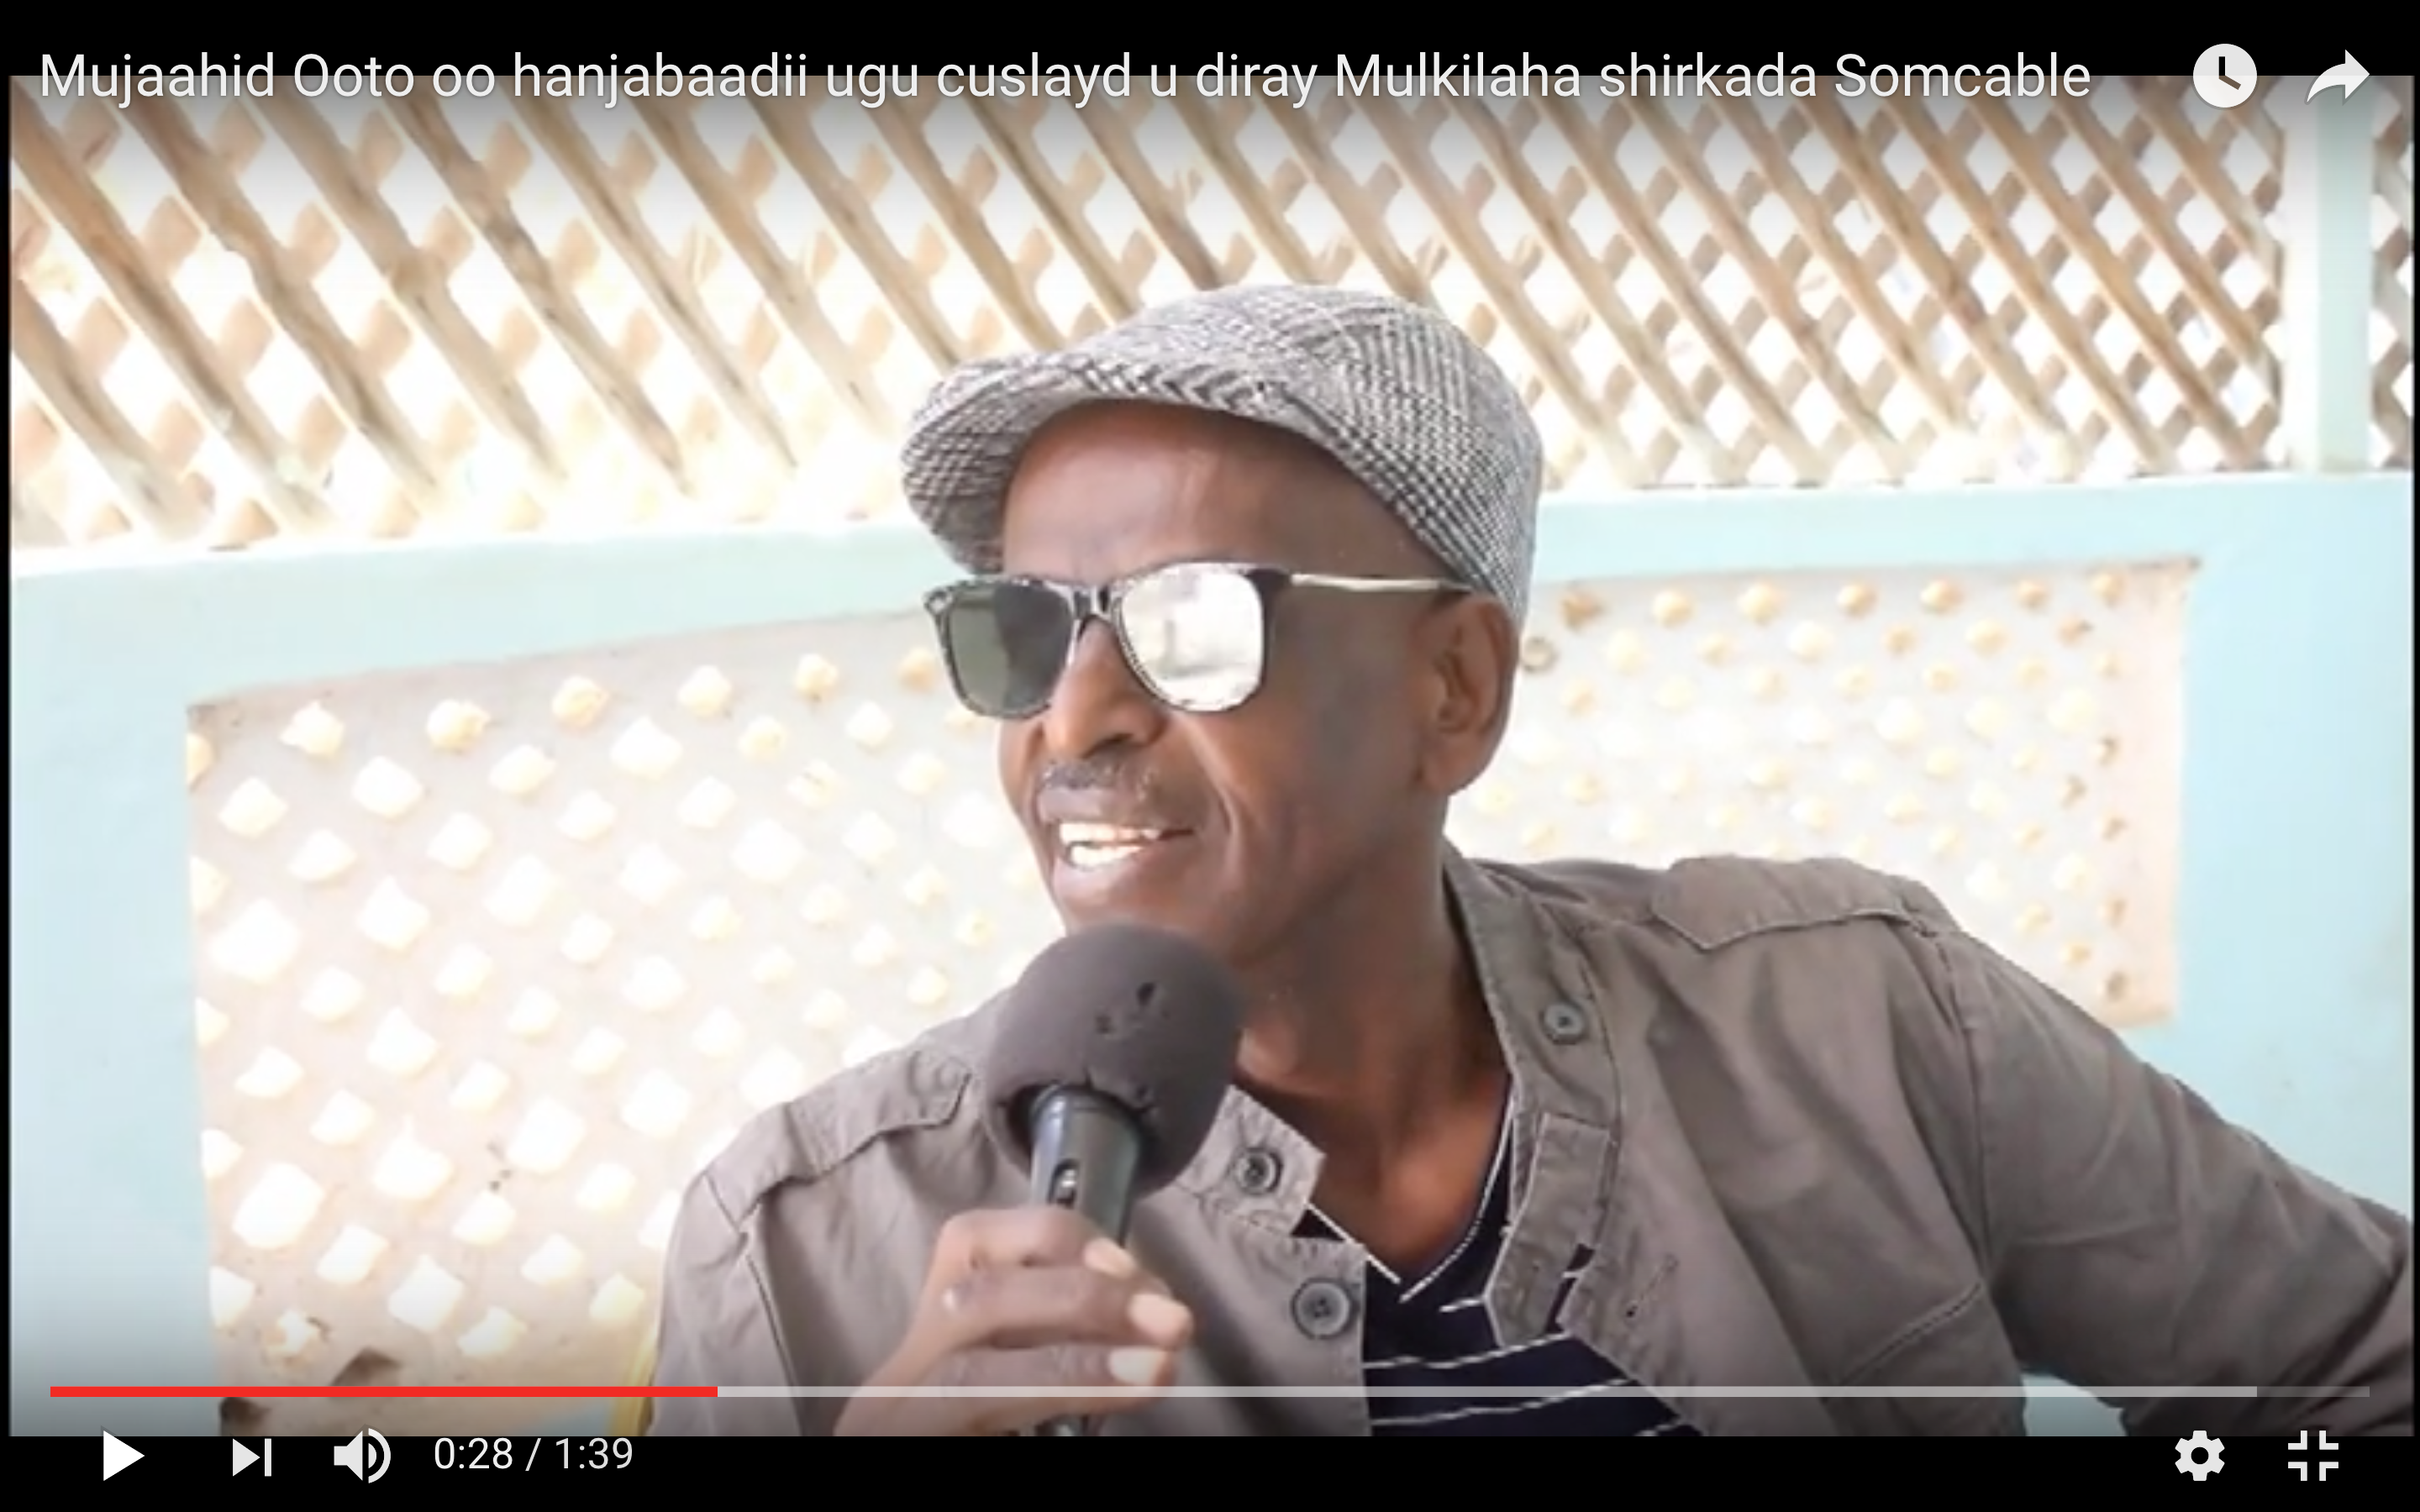 [Daawo] Somcable oo xanibtay Website-yadii Mucaaraday Muse biixi iyo Ina Aw Saciid oo ku biiray dagaal oogayaasha Somalia